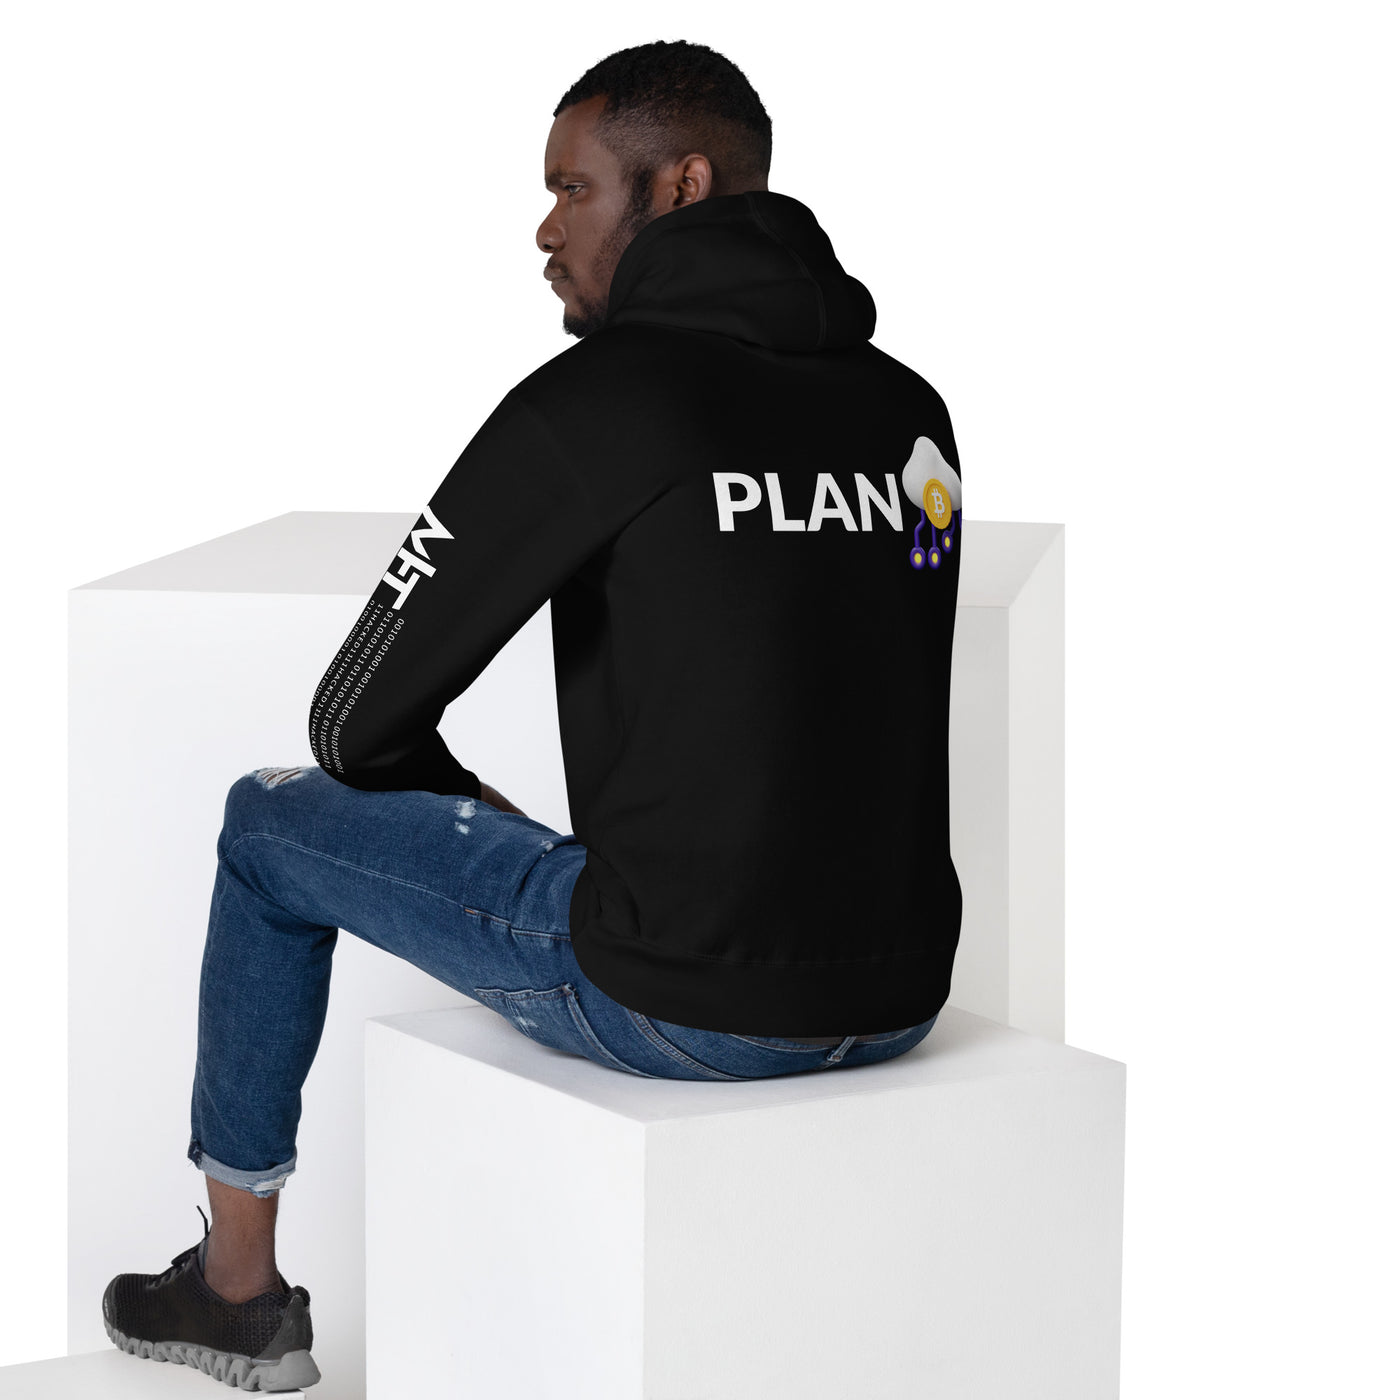 Plan B V5 - Unisex Hoodie (Back Print)